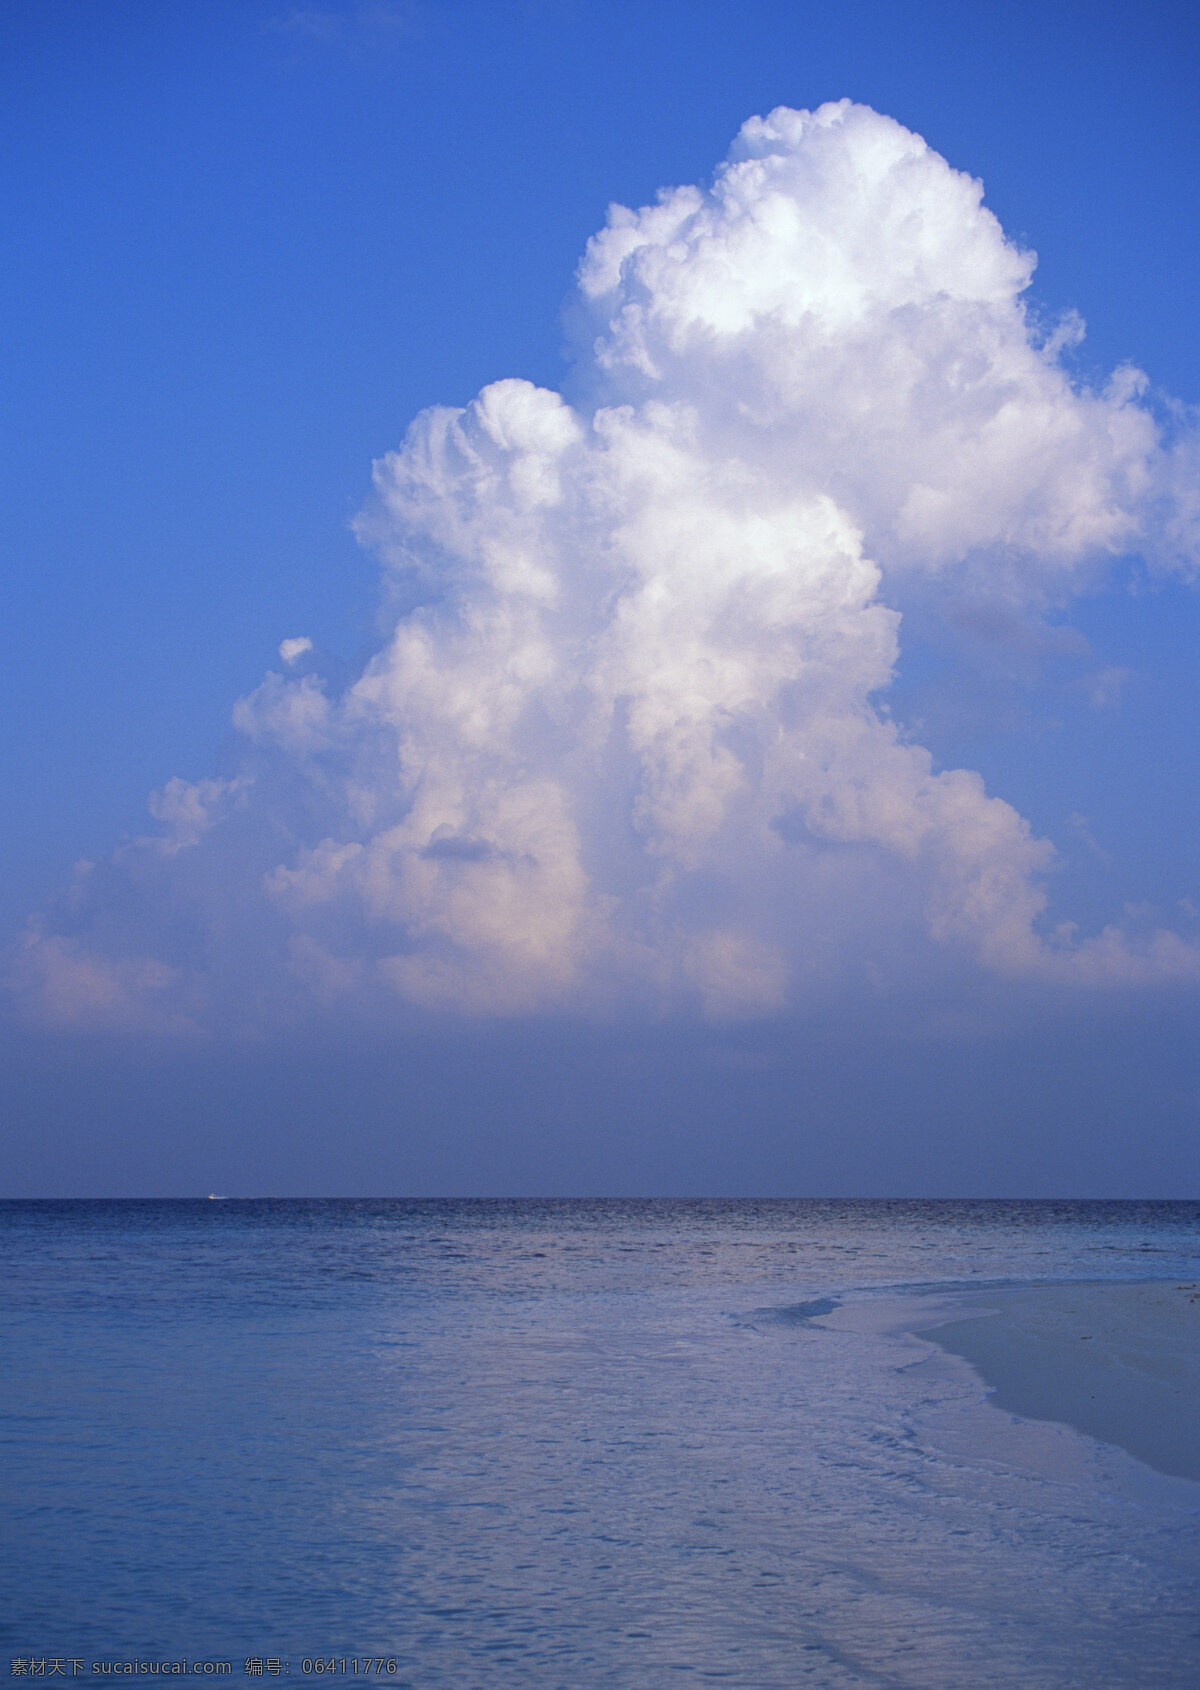 海南 风景图片 海南风景 风景 景点 景区 旅游 大海 海洋 沙滩 海岸 岸边 自然风景 自然景观 风景摄影 高清图片 海洋海边 蓝色